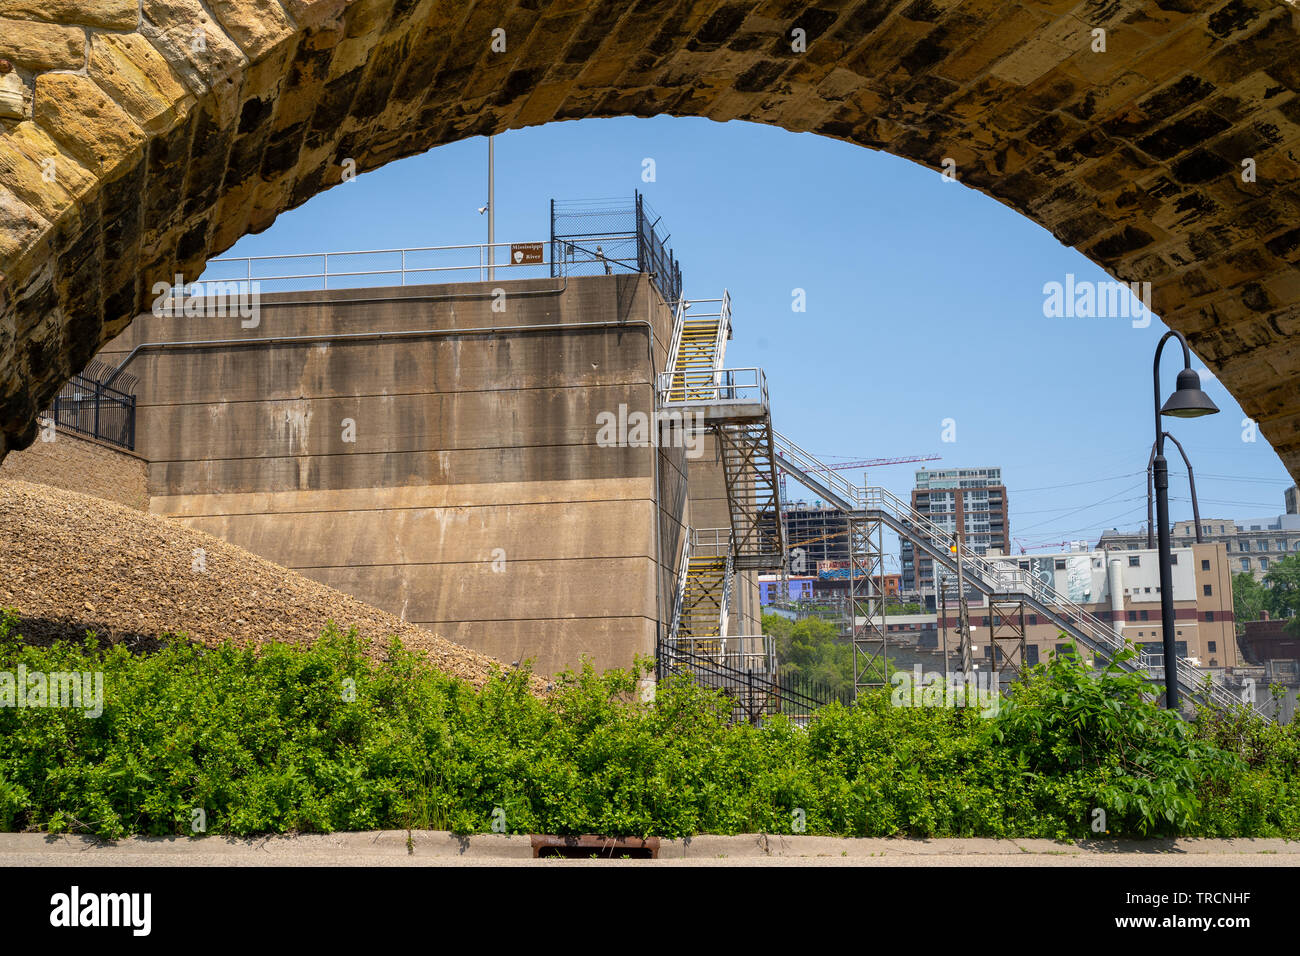 Minneapolis, MN - Juni 2, 2019: Steinbogenbrücke Frames der St. Anthony Falls Sperren und Damm auf dem Mississippi Fluss in der Innenstadt von Minneapolis Stockfoto